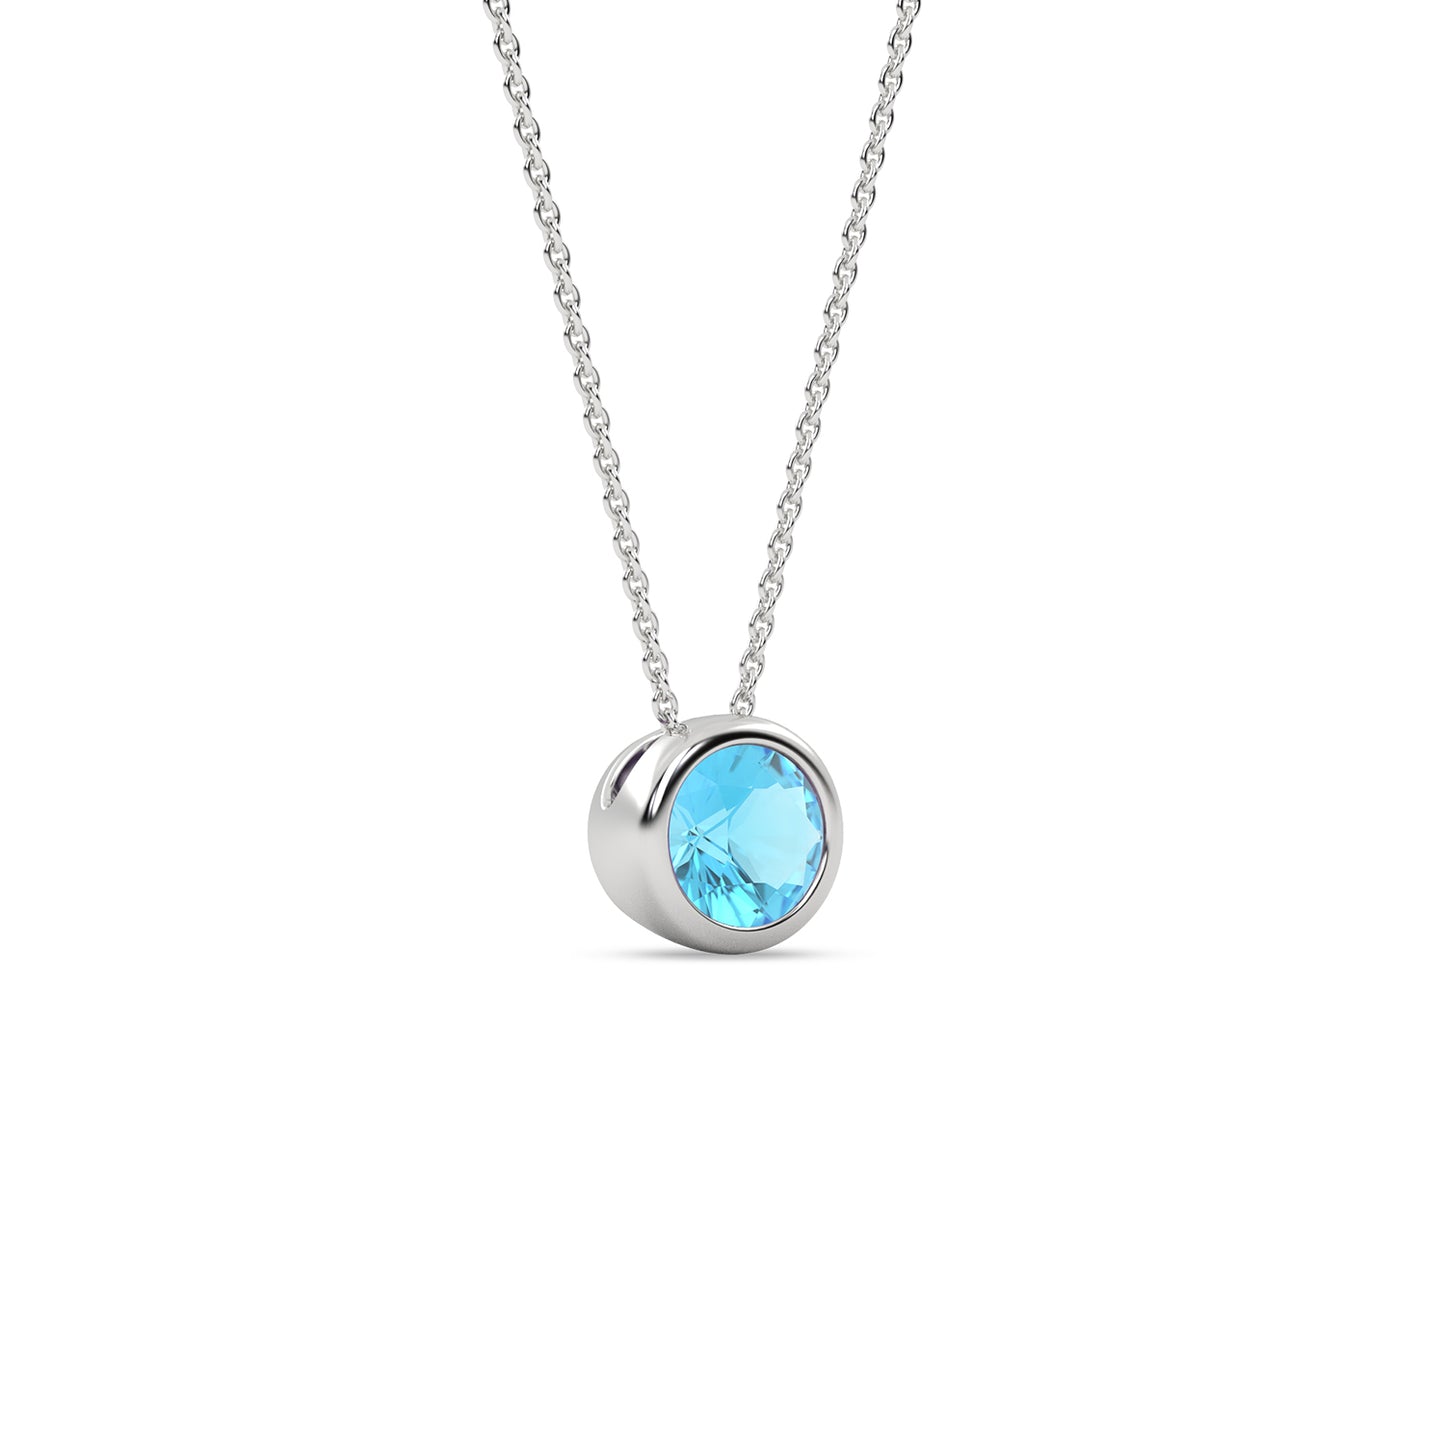 Gemstone Encompassing Round Necklace